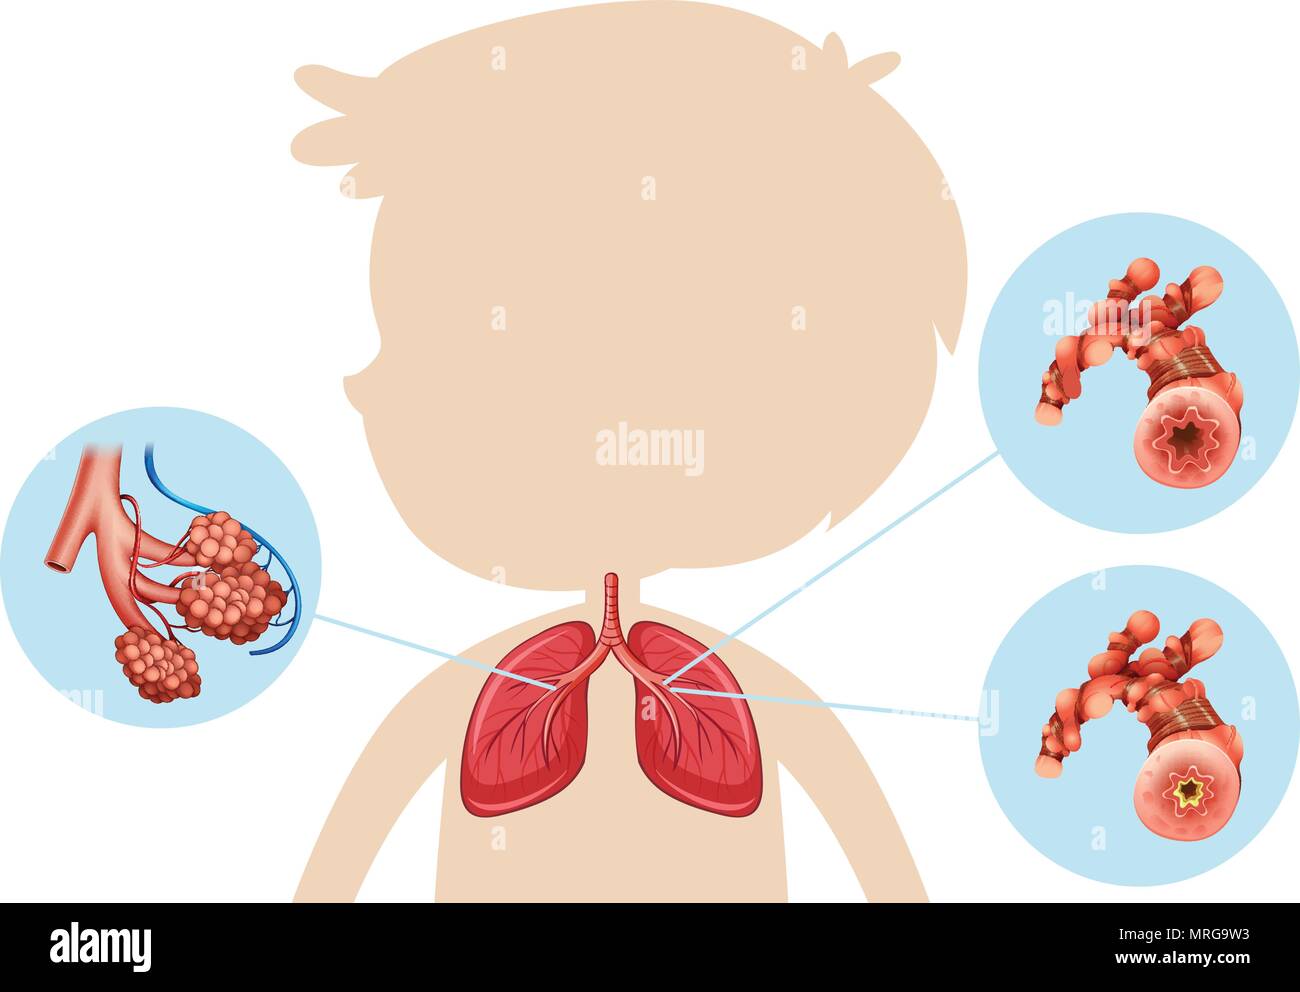 Anatomie d'un garçon illustration pulmonaire Illustration de Vecteur